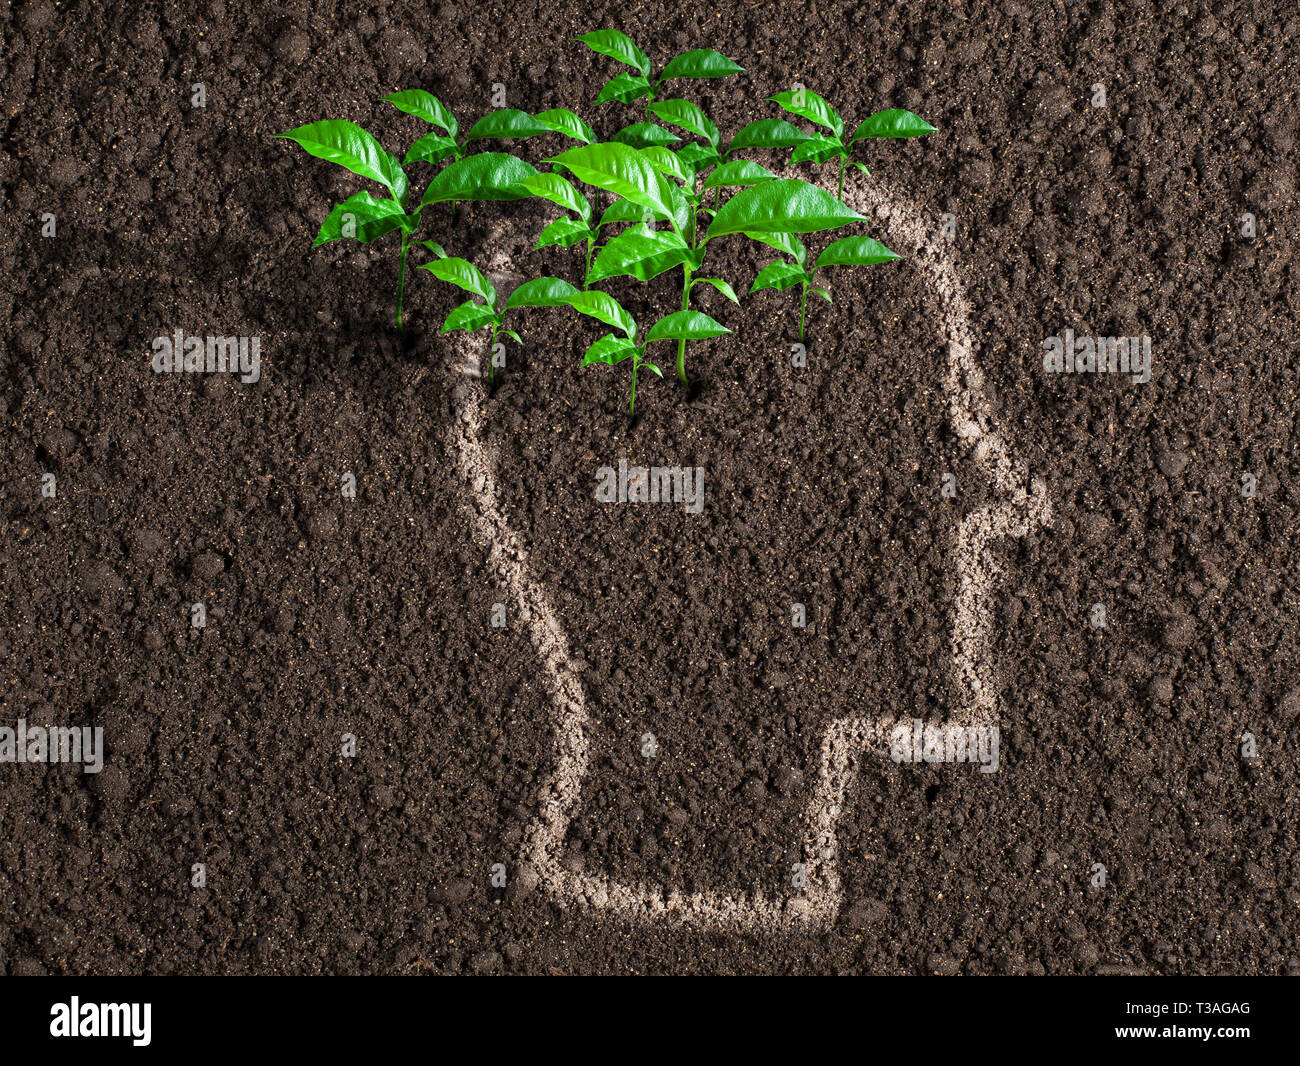 Idee e concetto di iniziativa. Foglie verdi dal cervello umano. Foto Stock